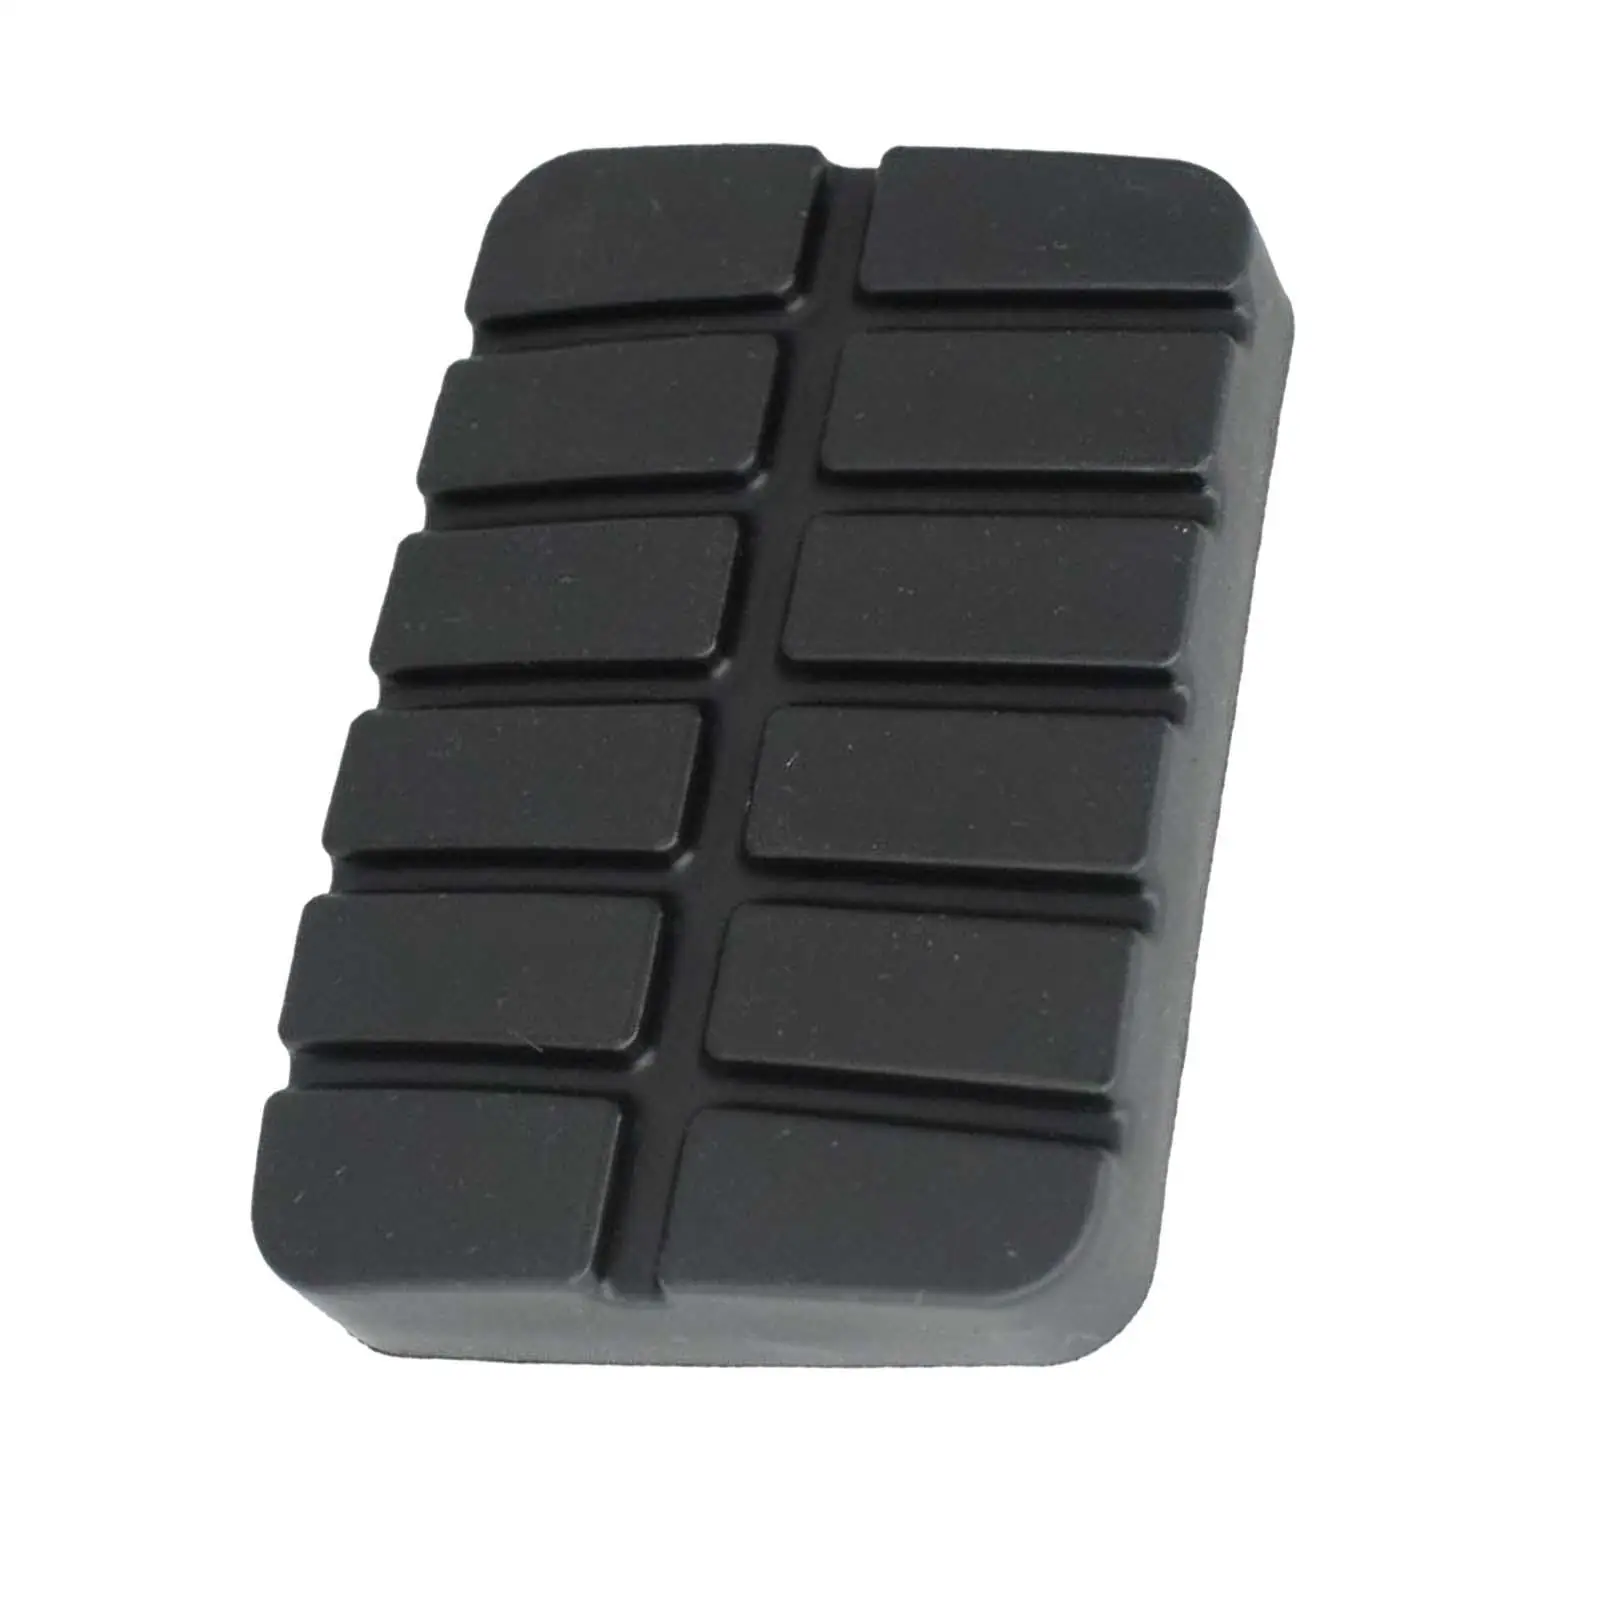 Car Brake Clutch Pedal Rubber Pad Cover 49751-ni110 Auto Accessory AntiSlip